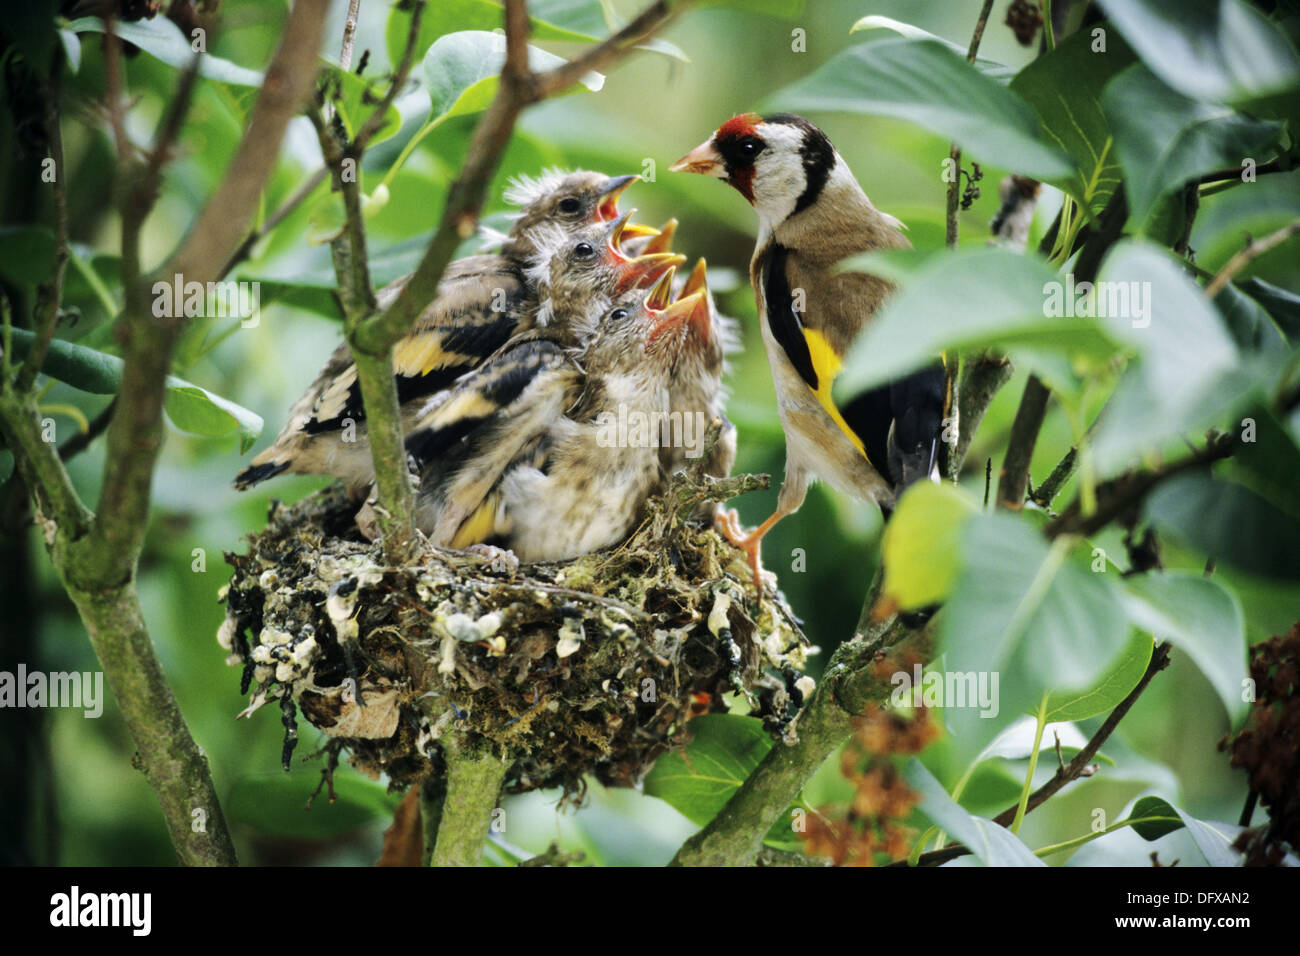 Jilguero (Carduelis carduelis) alimenta a sus cinco polluelos en el nido. Foto de stock